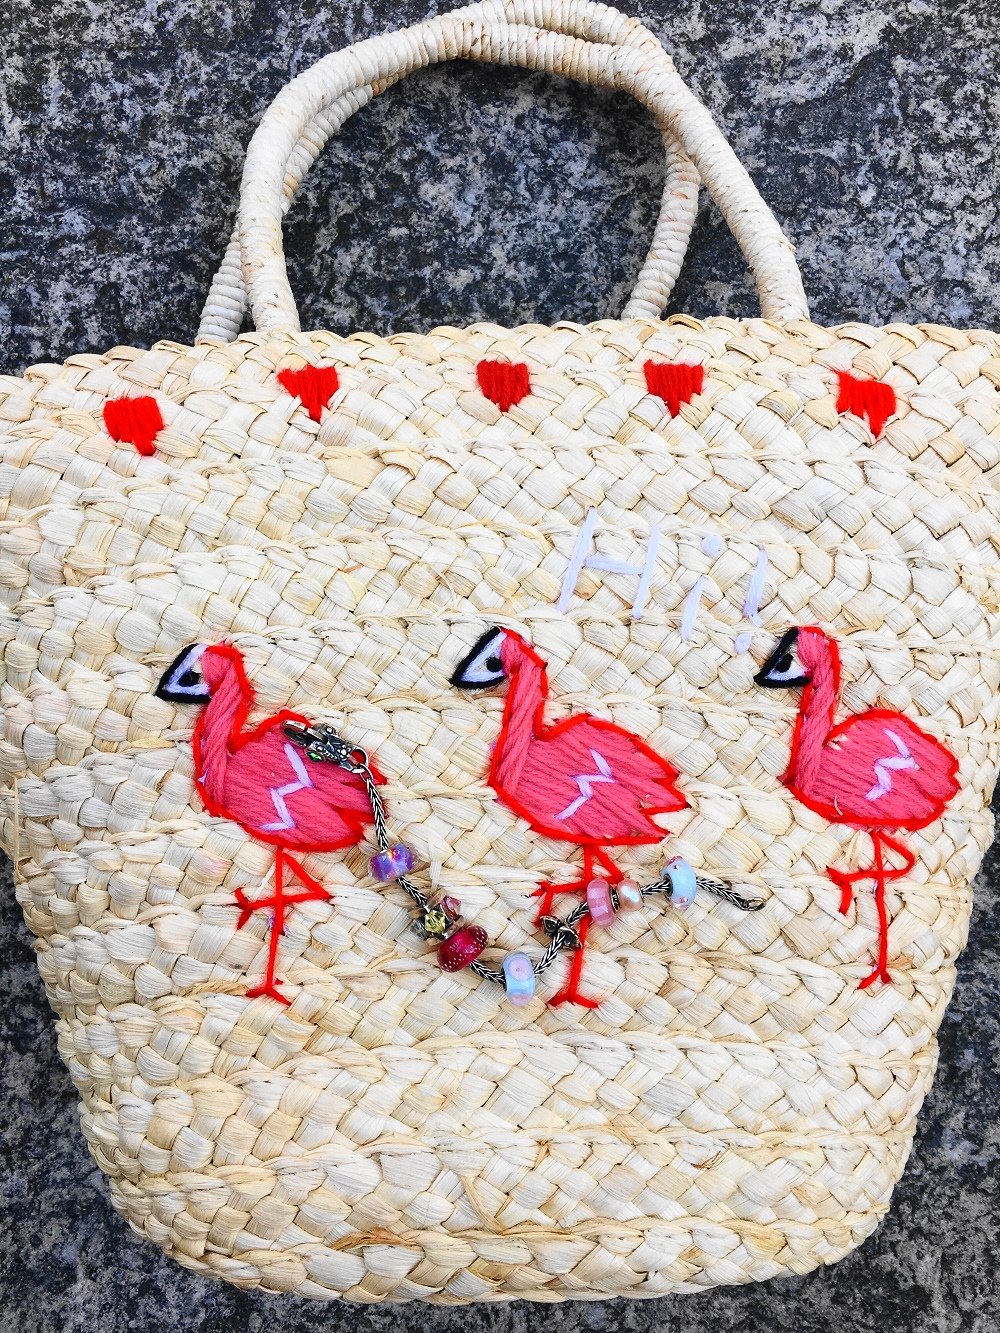 Heute zeige ich euch in meinem Blog einen hübschen Tropical Look mit Palmenprint Rock und mit meiner süßen Flamingo Korbtasche und zeige euch kultige IT Bags